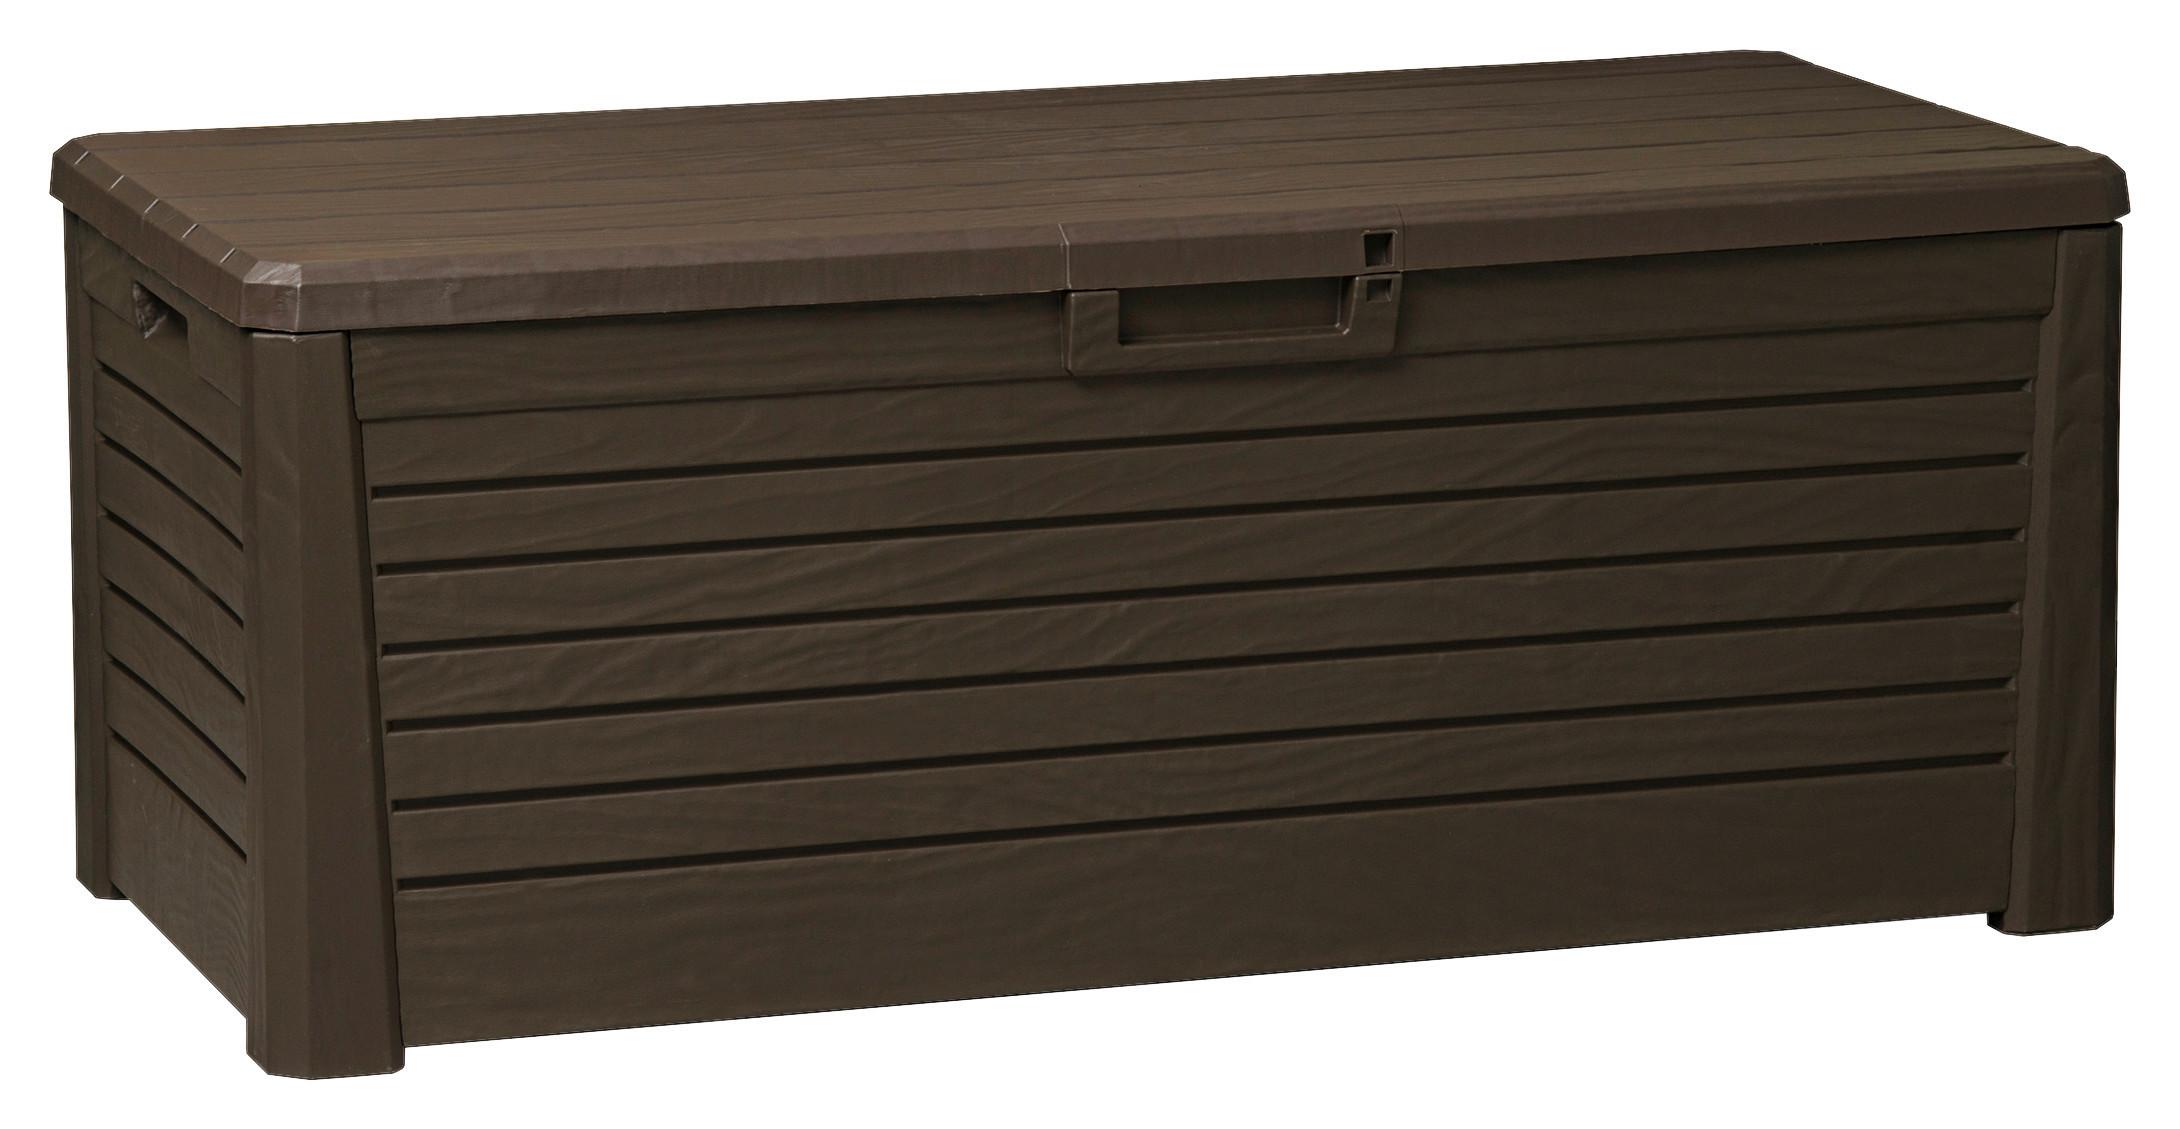 Kissenbox Auflagenbox Wood Holz Design Kunststoff braun Garten Sitzkissen Box 